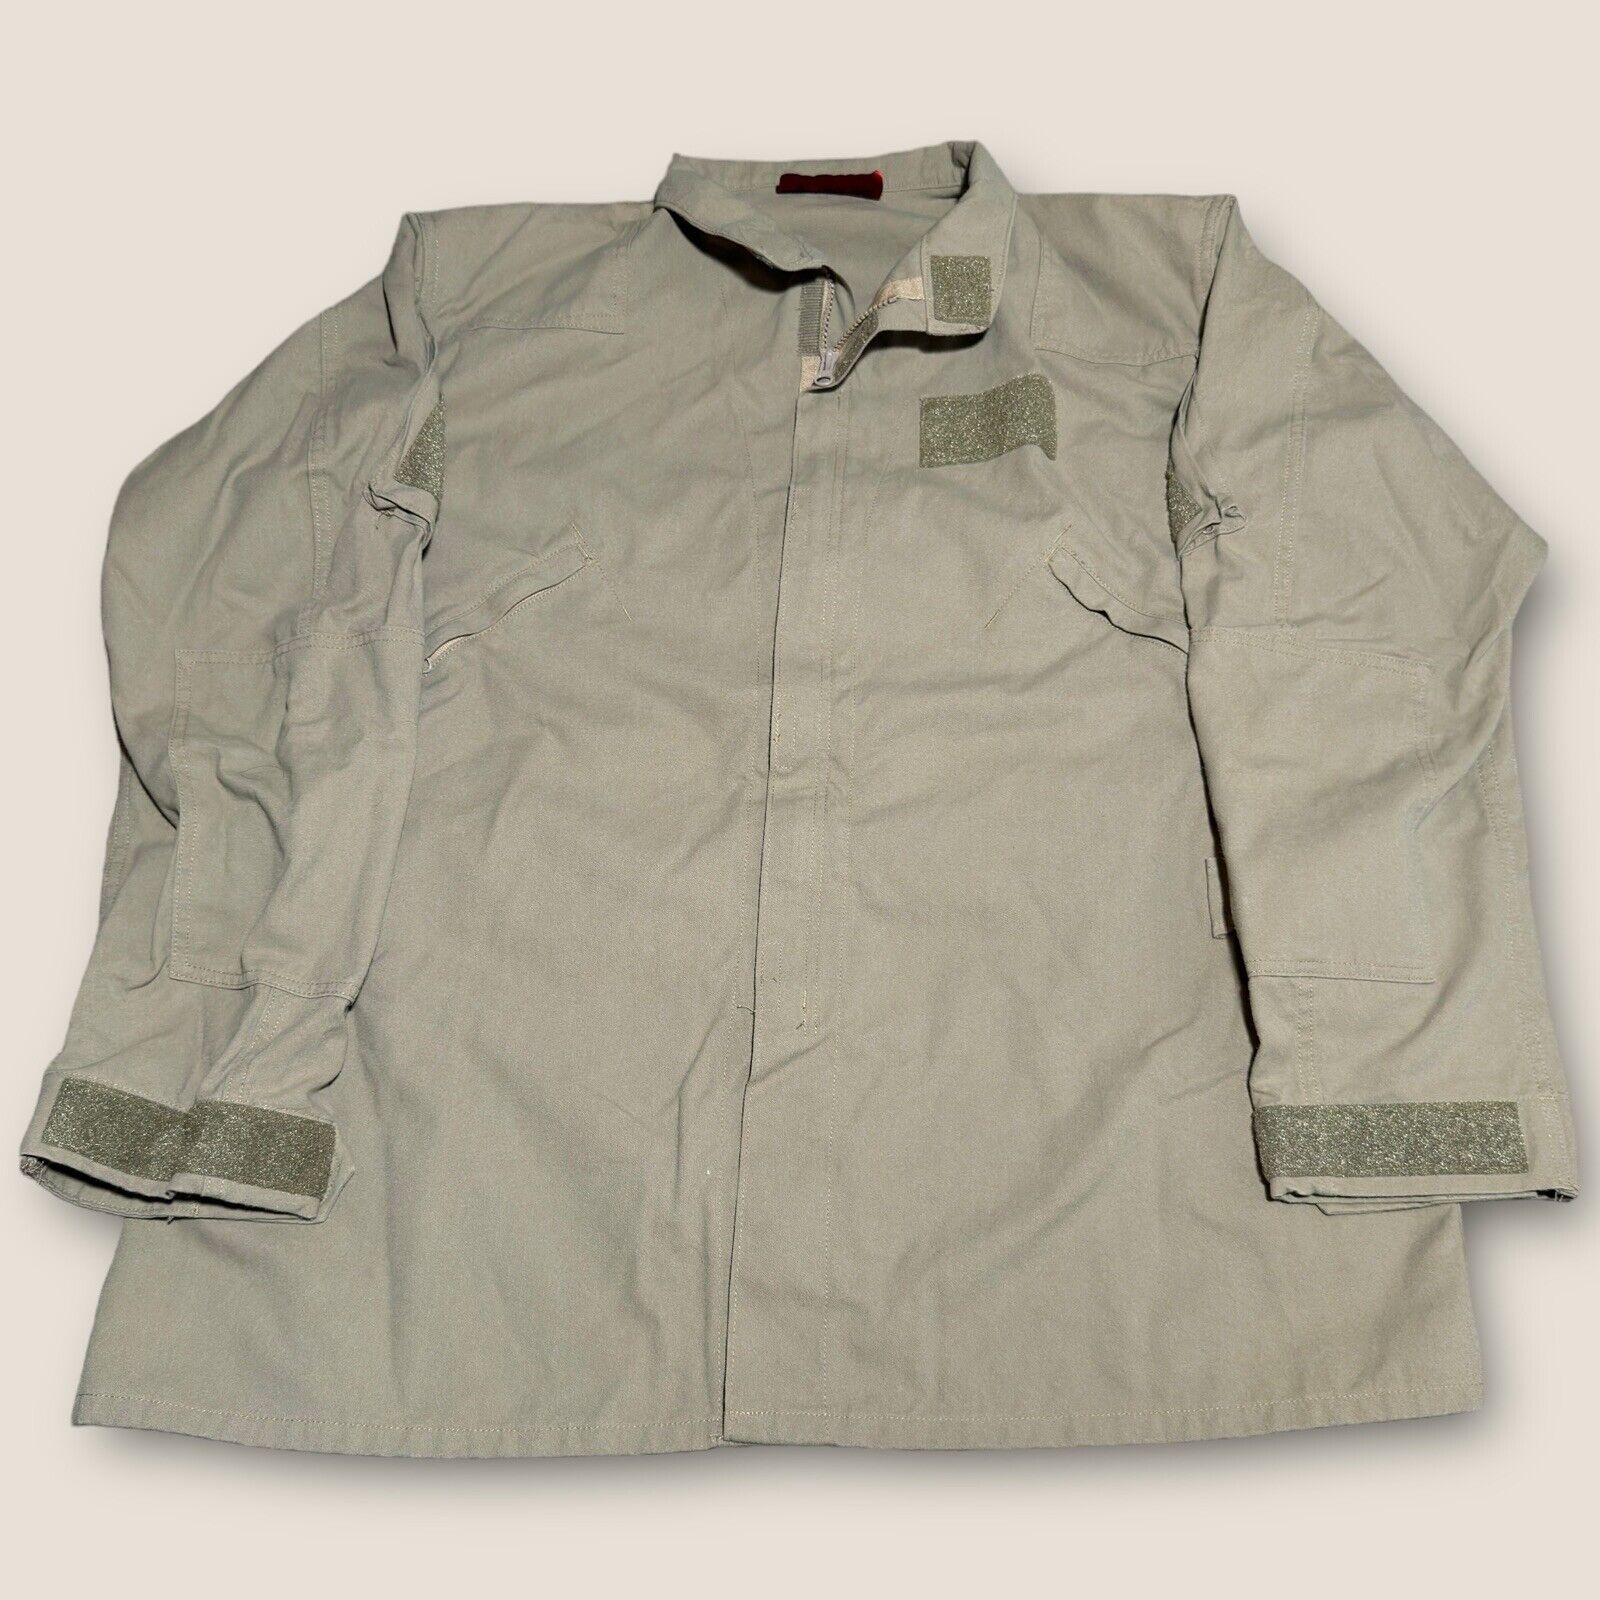 DRIFIRE FR Flight Suit Shirt Top Sz XXL - R Tan Tactical Pockets Made In USA